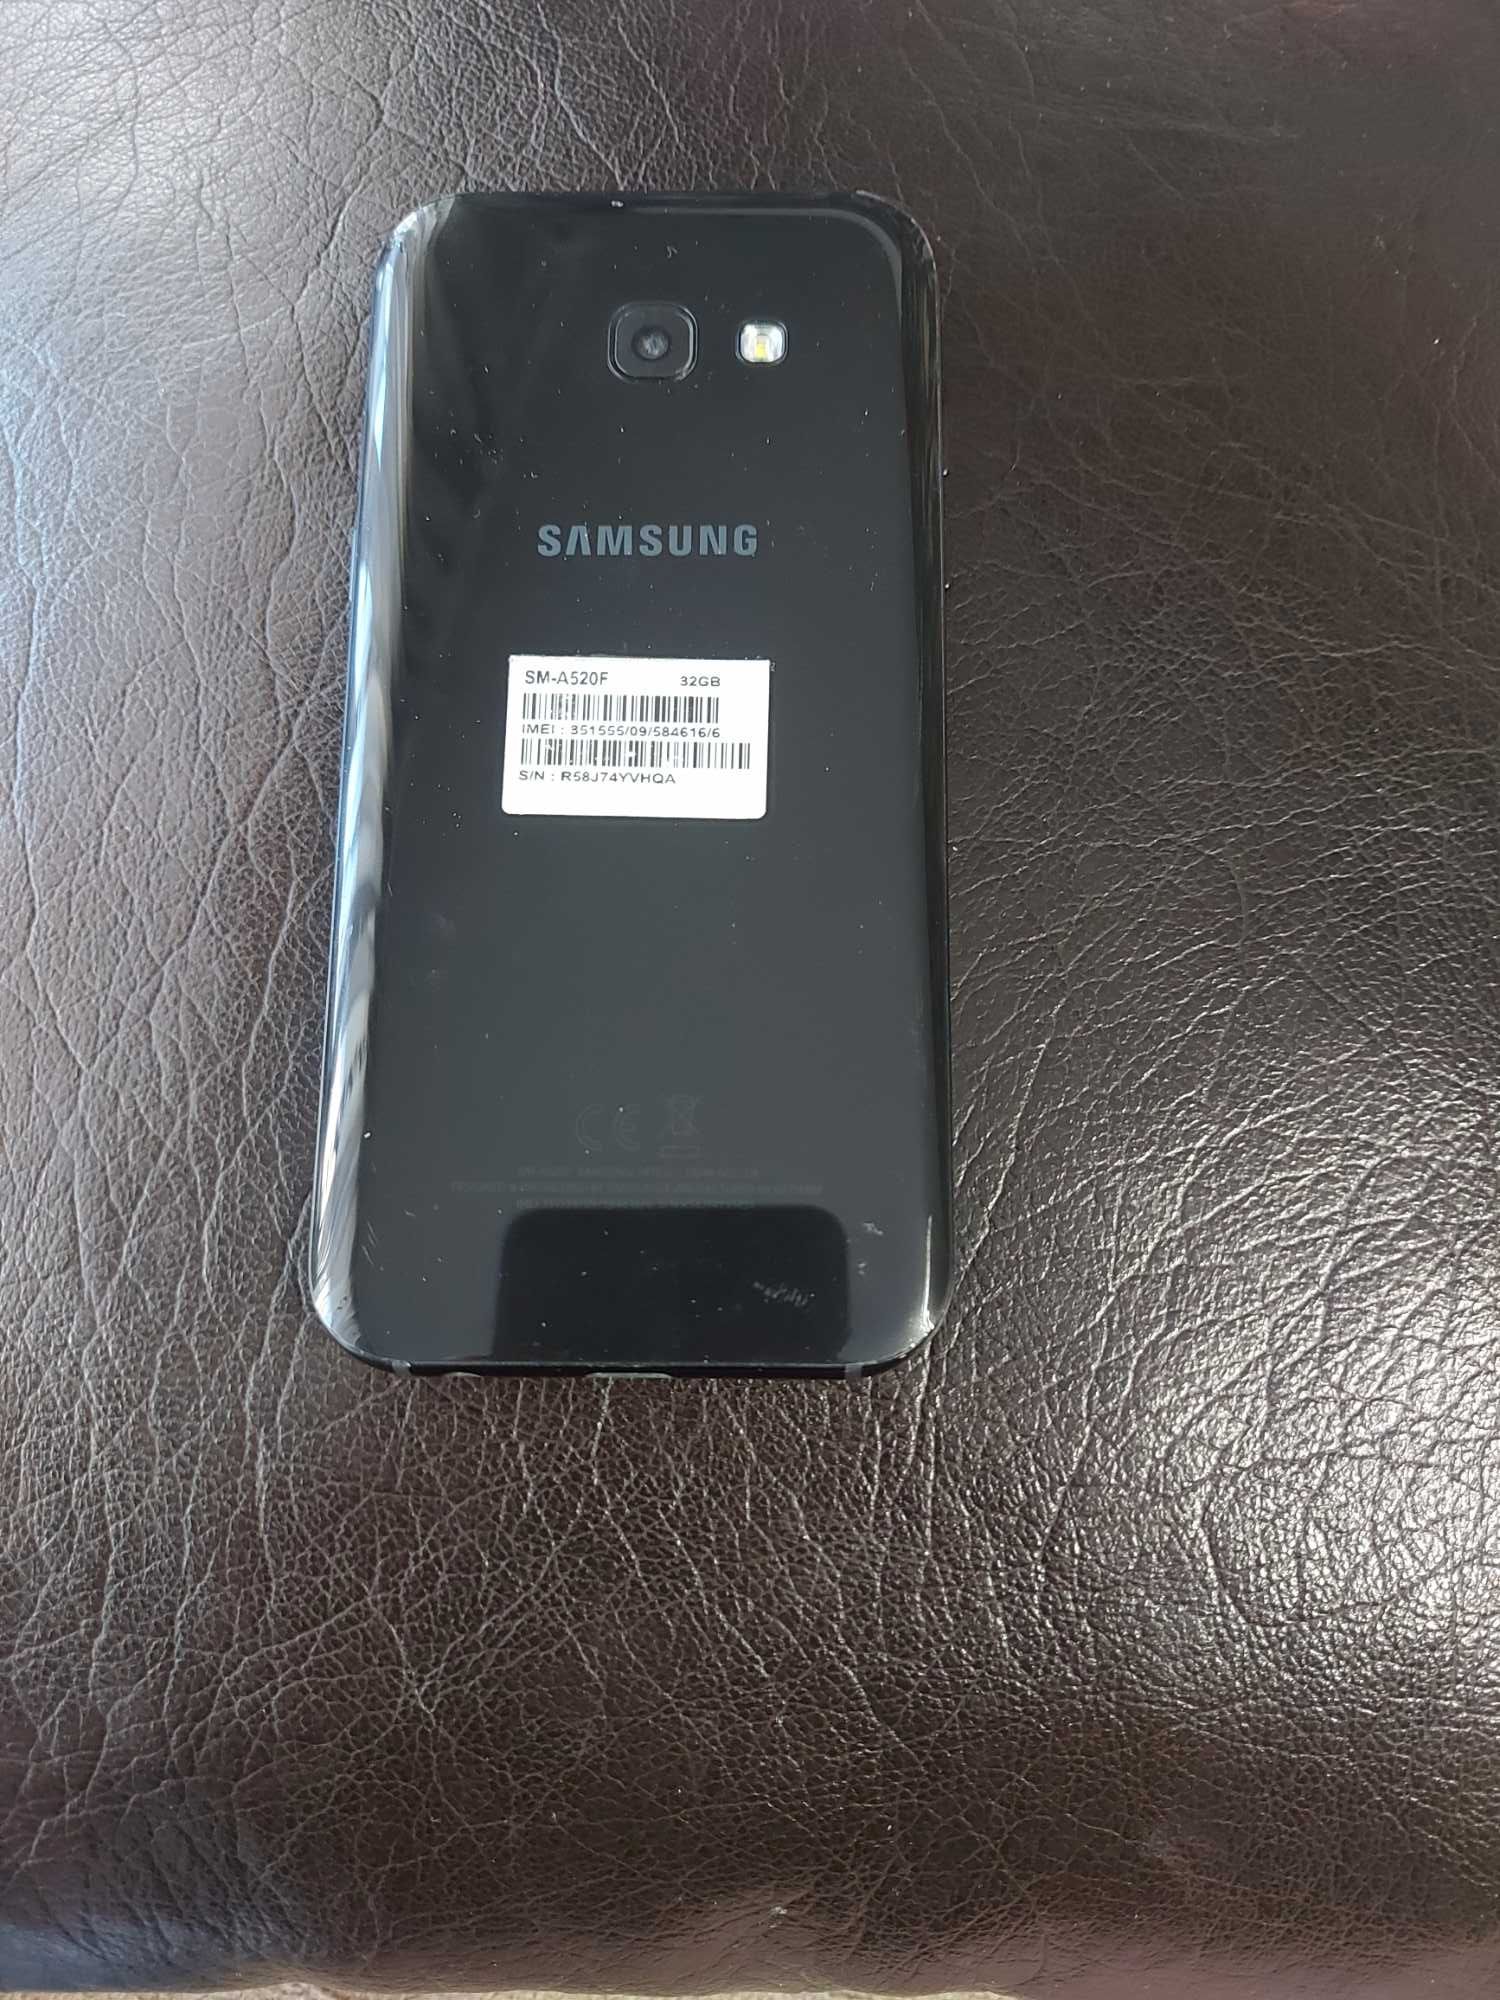 Samsung Galaxy - A5